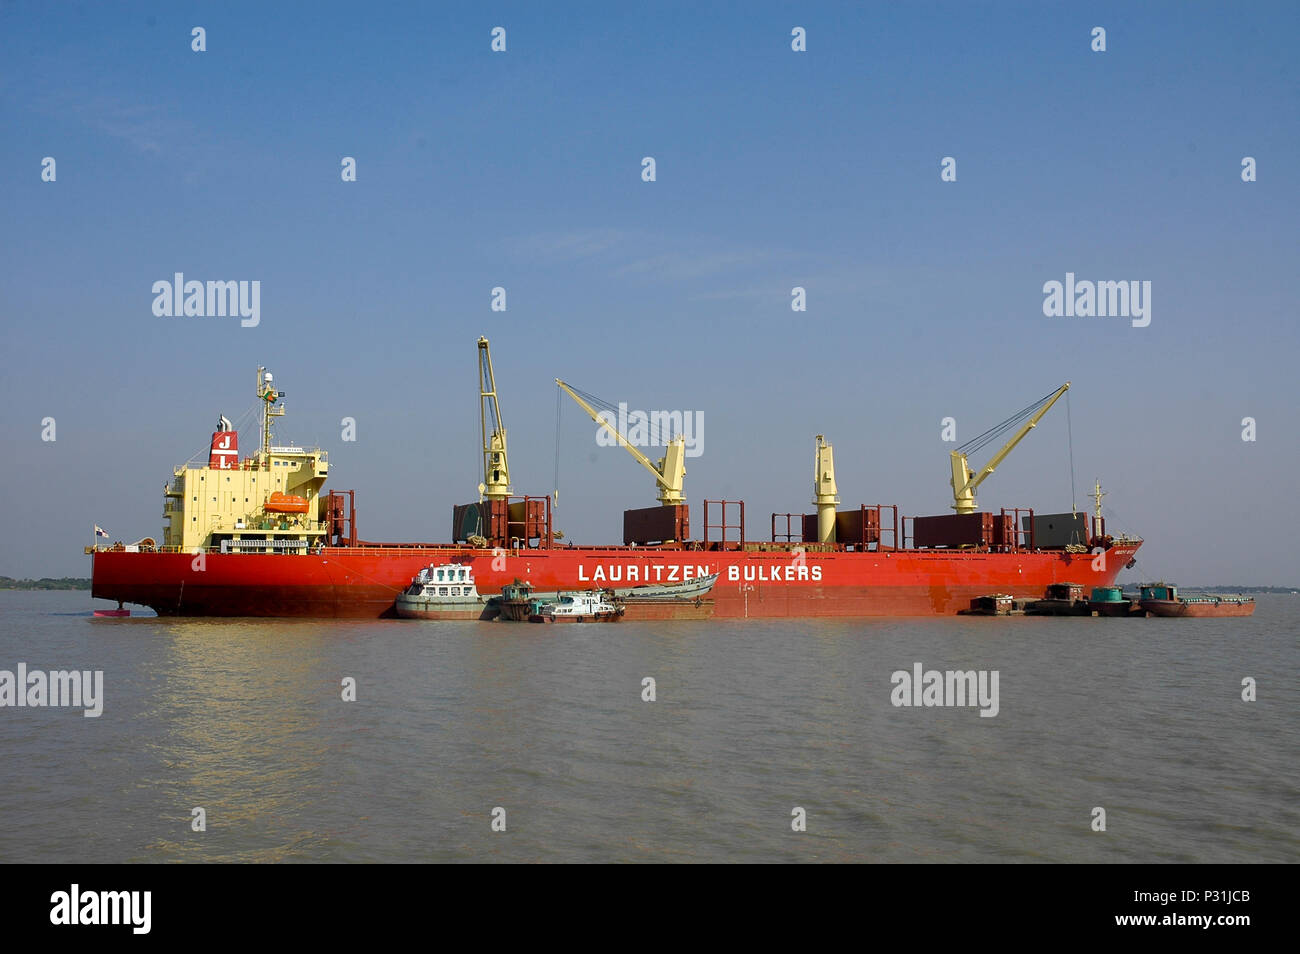 Ein fremdes Schiff auf die äußere Verankerung der Mongla Port. Bagerhat, Bangladesch. Stockfoto